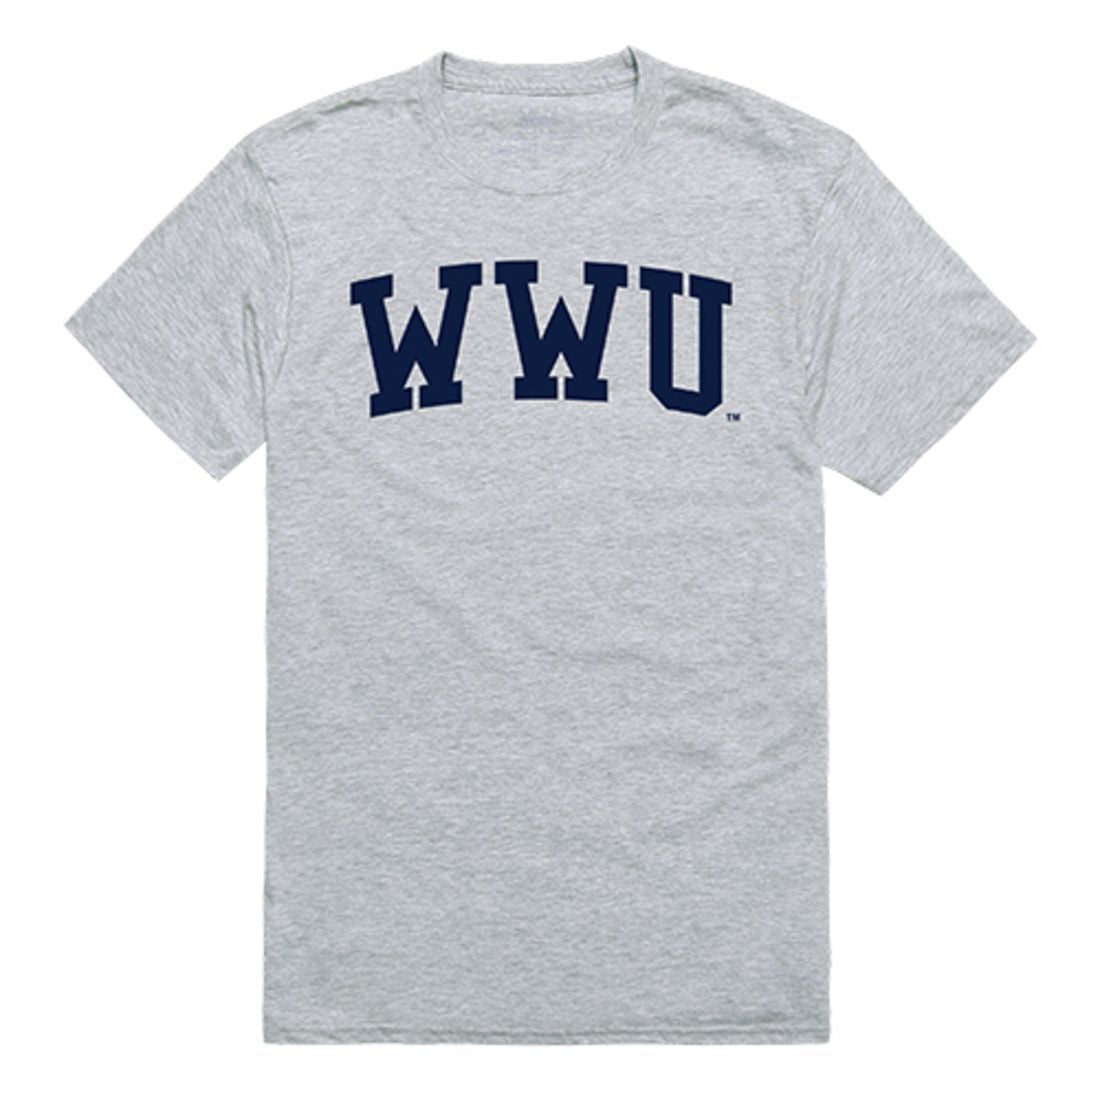 Western Washington University WWU Game Day T-Shirt Heather Grey-Campus-Wardrobe